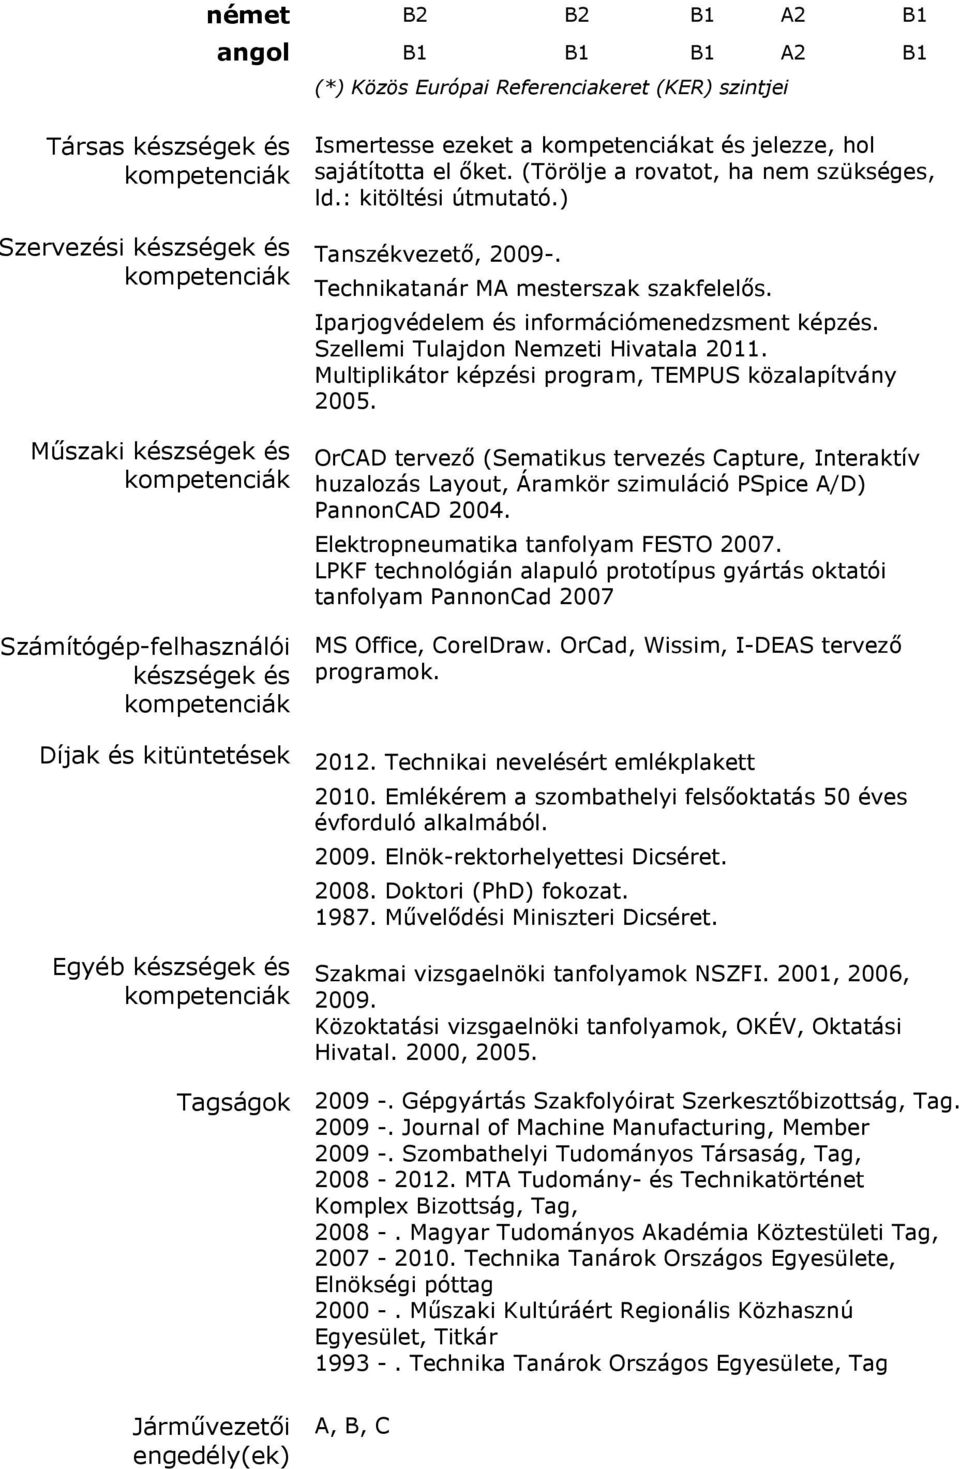 Iparjogvédelem és információmenedzsment. Szellemi Tulajdon Nemzeti Hivatala 2011. Multiplikátor i program, TEMPUS közalapítvány 2005.